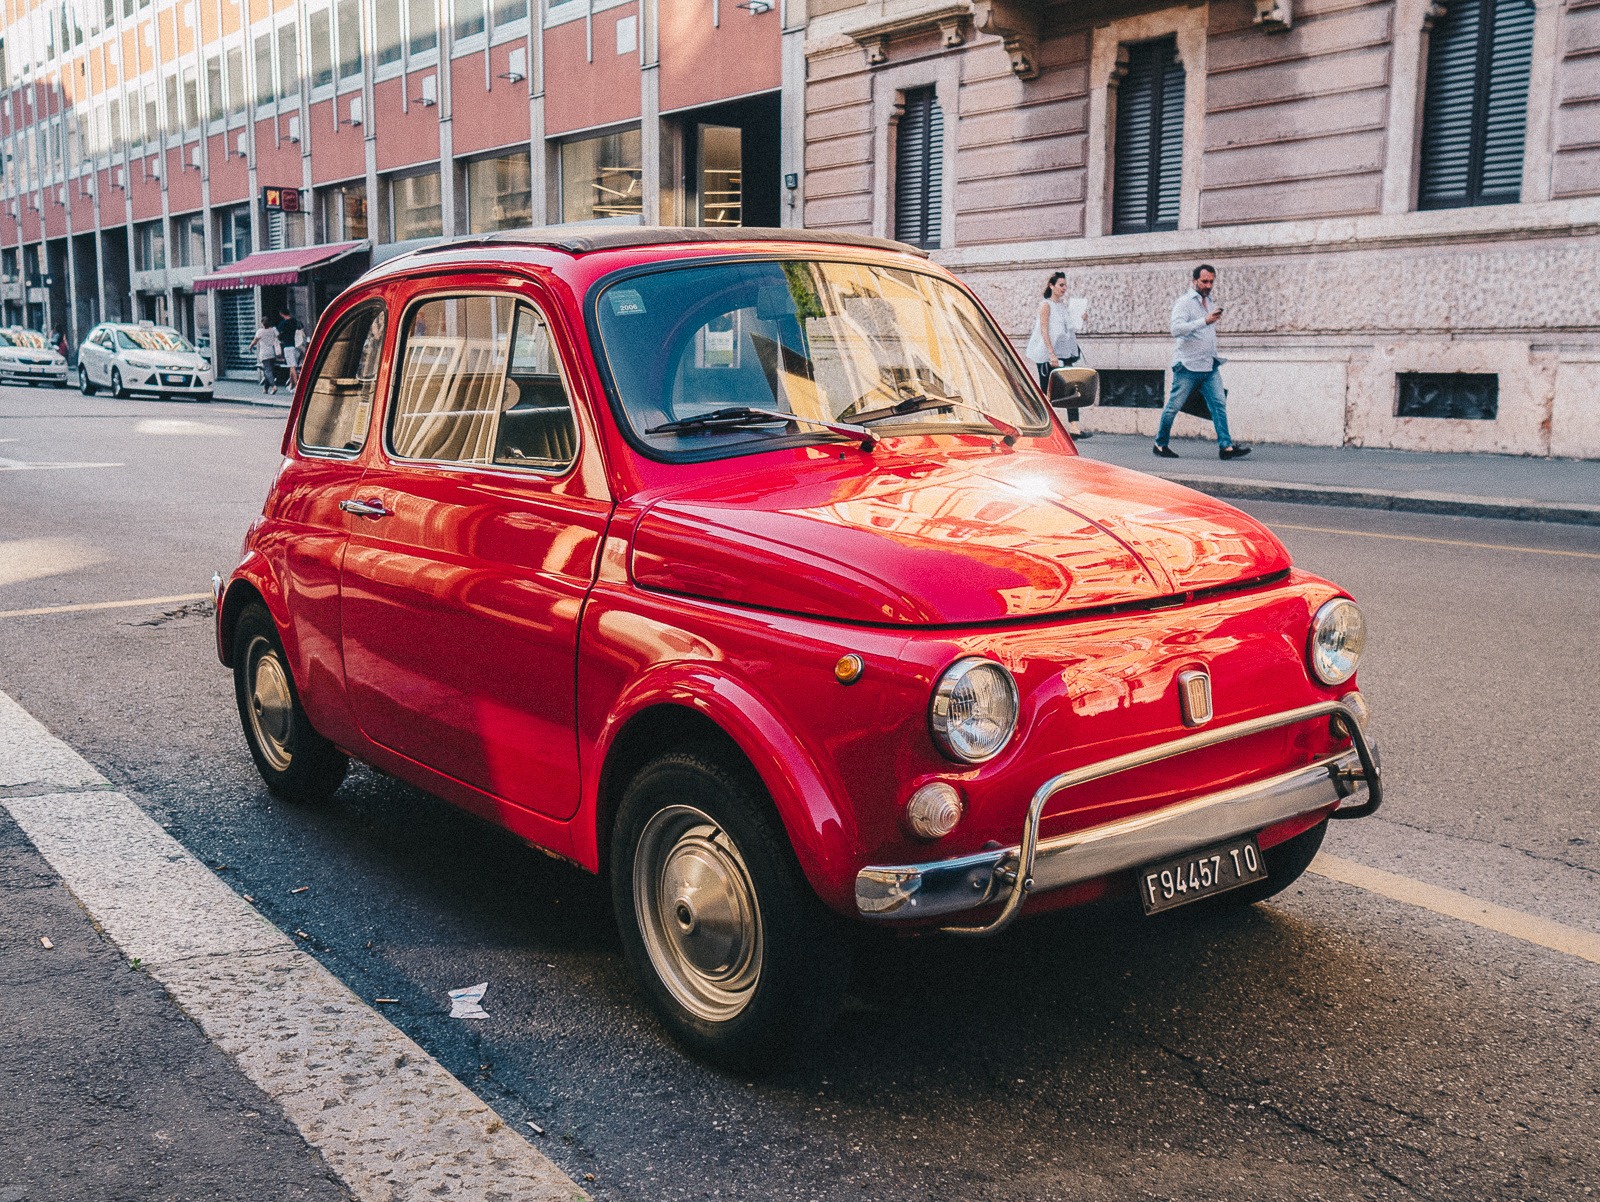 Итальянский 4 буквы. Итальянские мини автомобили. Маленькие машинки в Италии. Малолитражки Италии. Итальянские авто 2021.